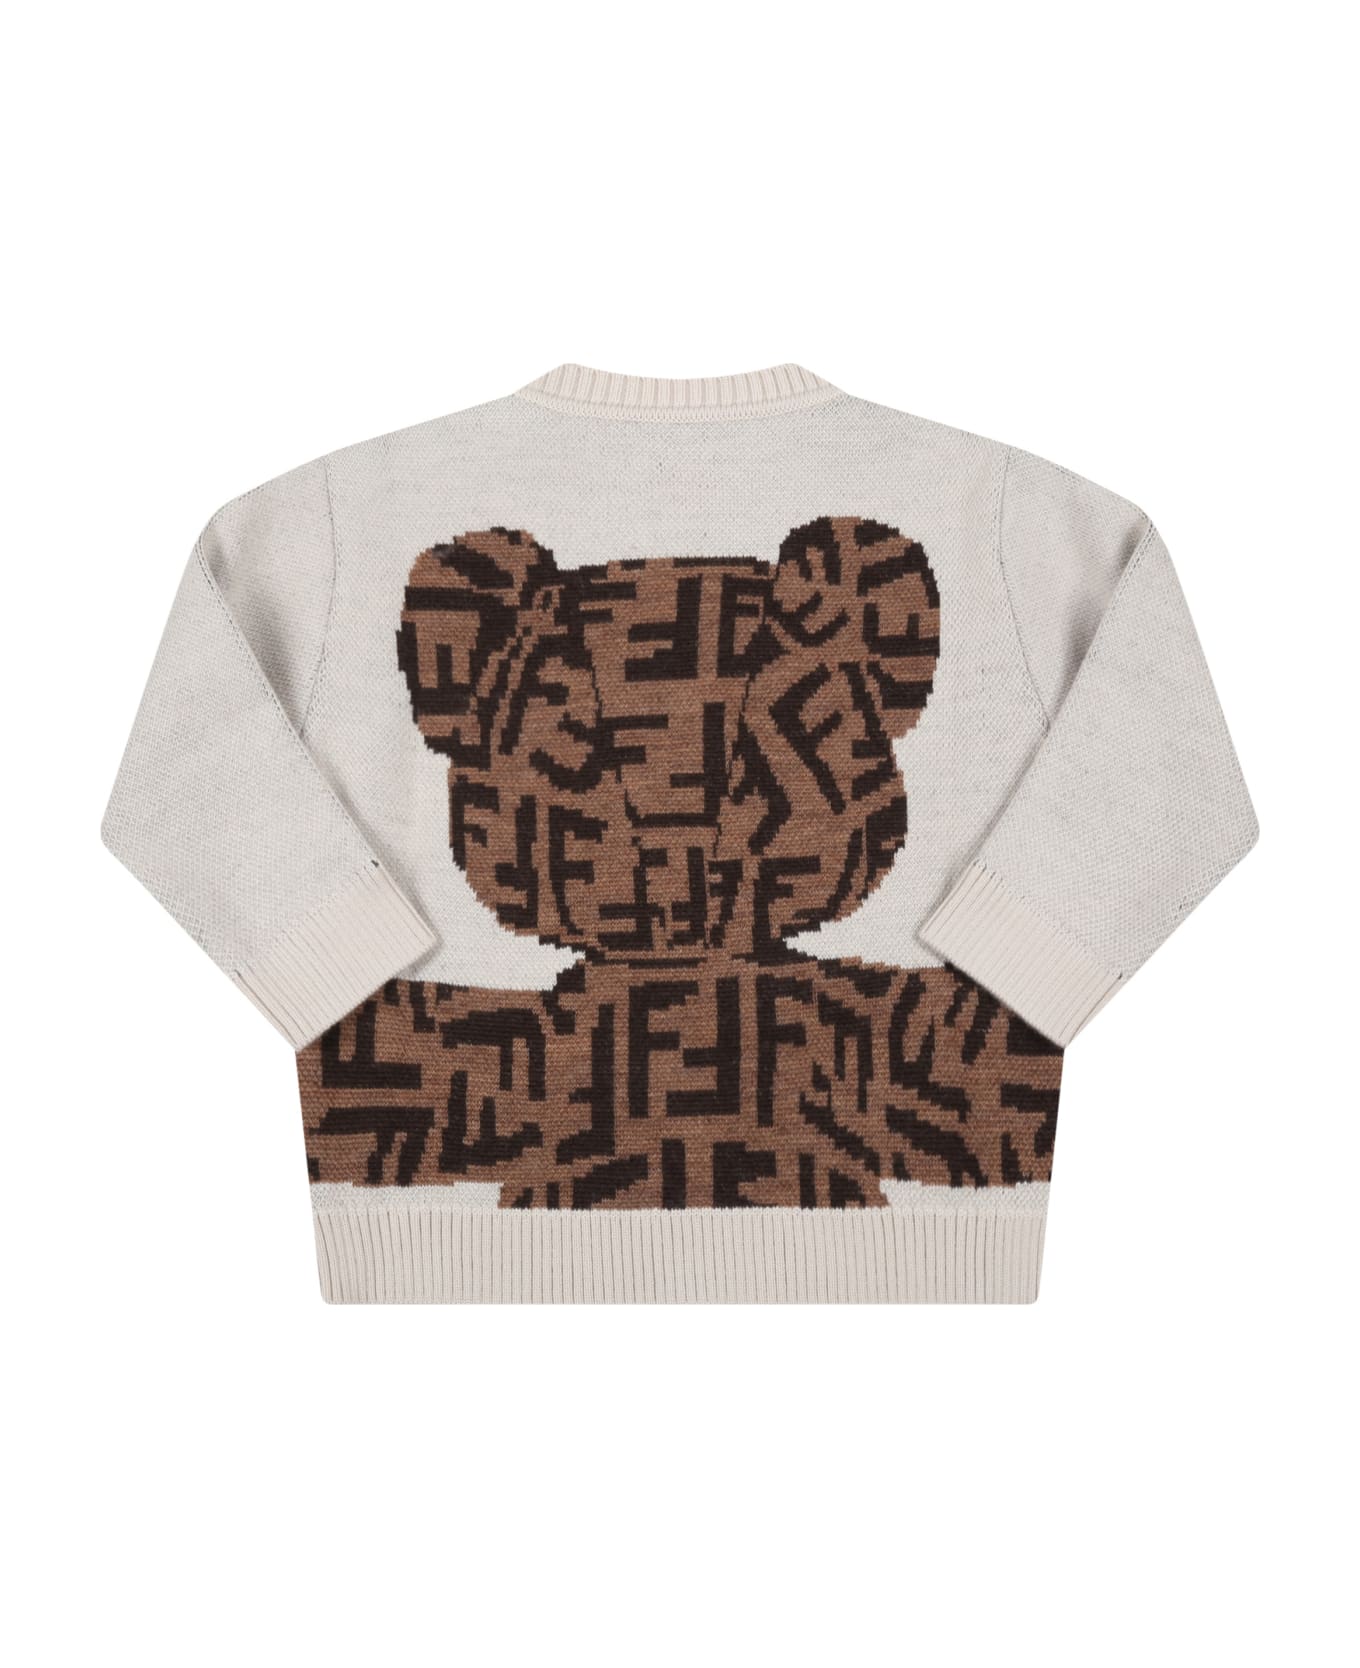 Fendi Body Beige Sweater For Baby Kids With Bear - Beige